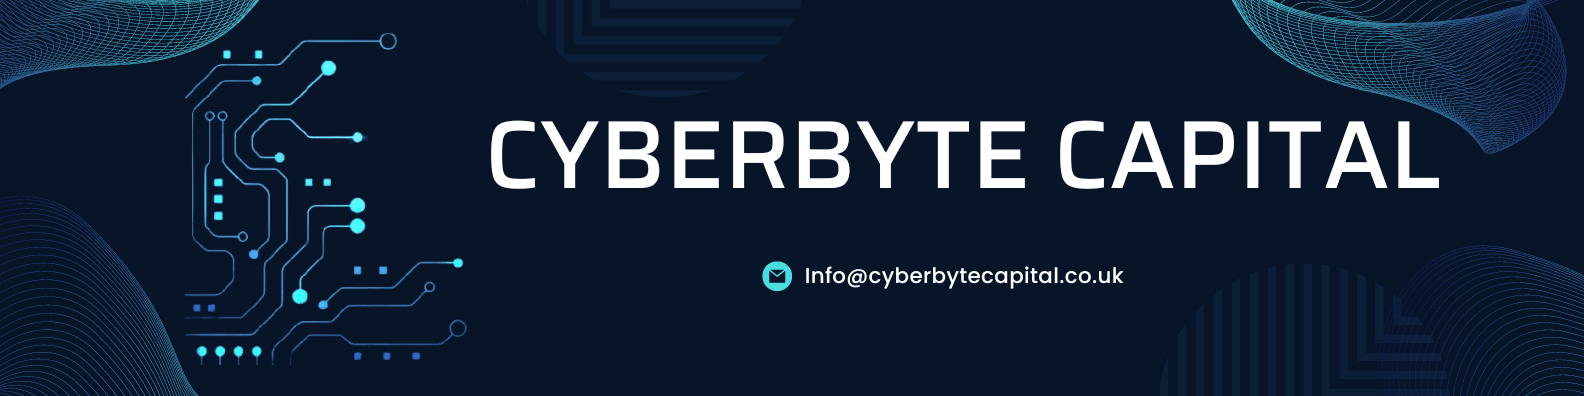 CyberByte-Capital 橫幅